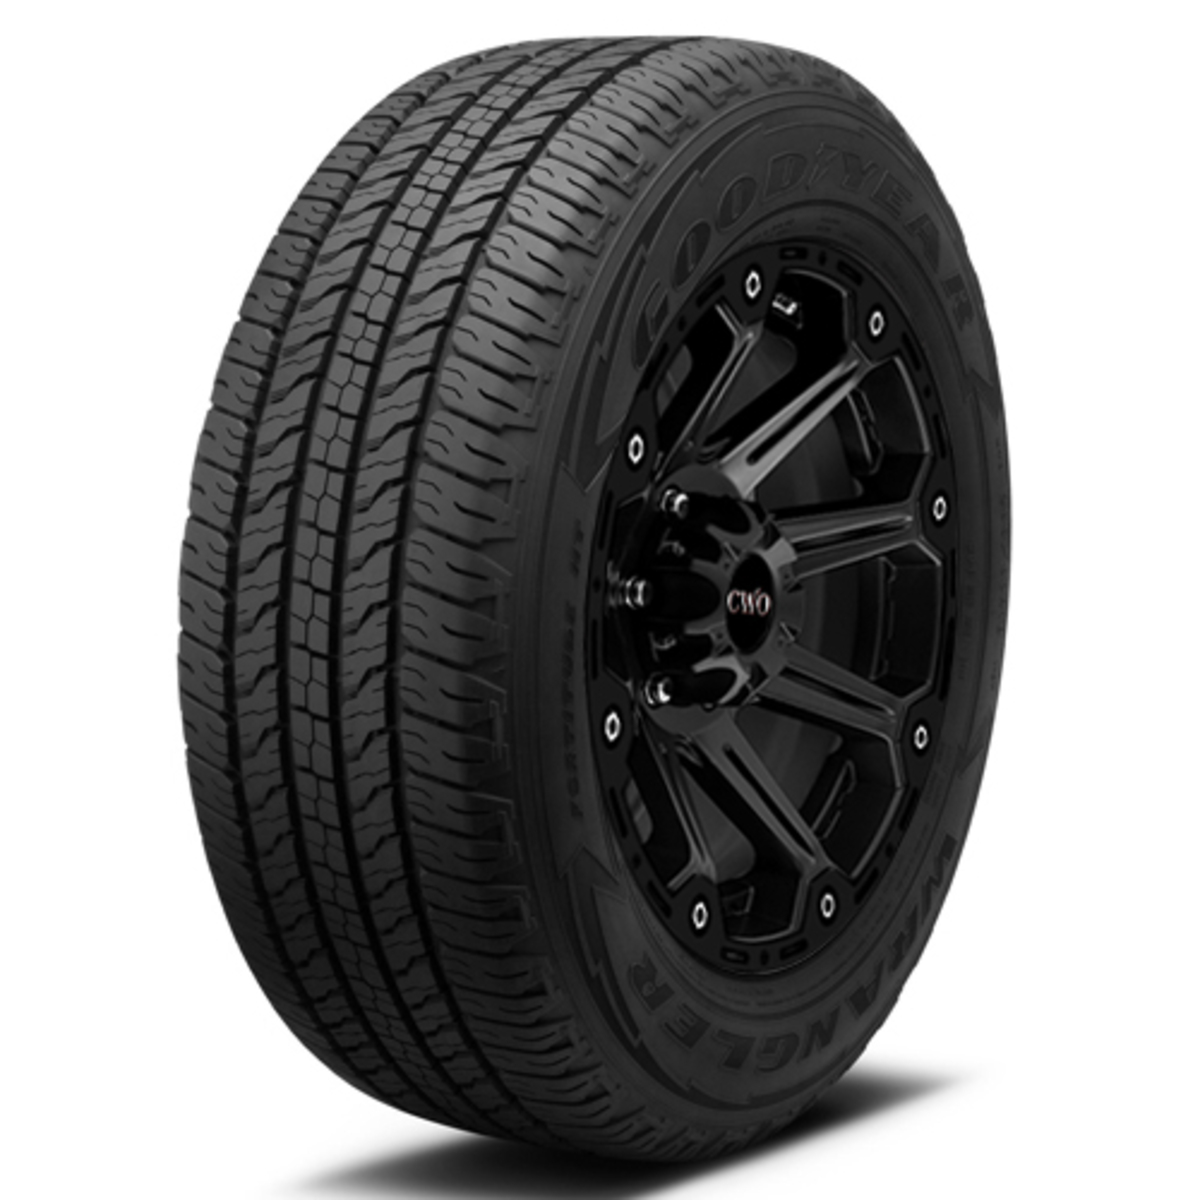 Wrangler Fortitude Ht (Owl) - Tyres | Hyper Drive